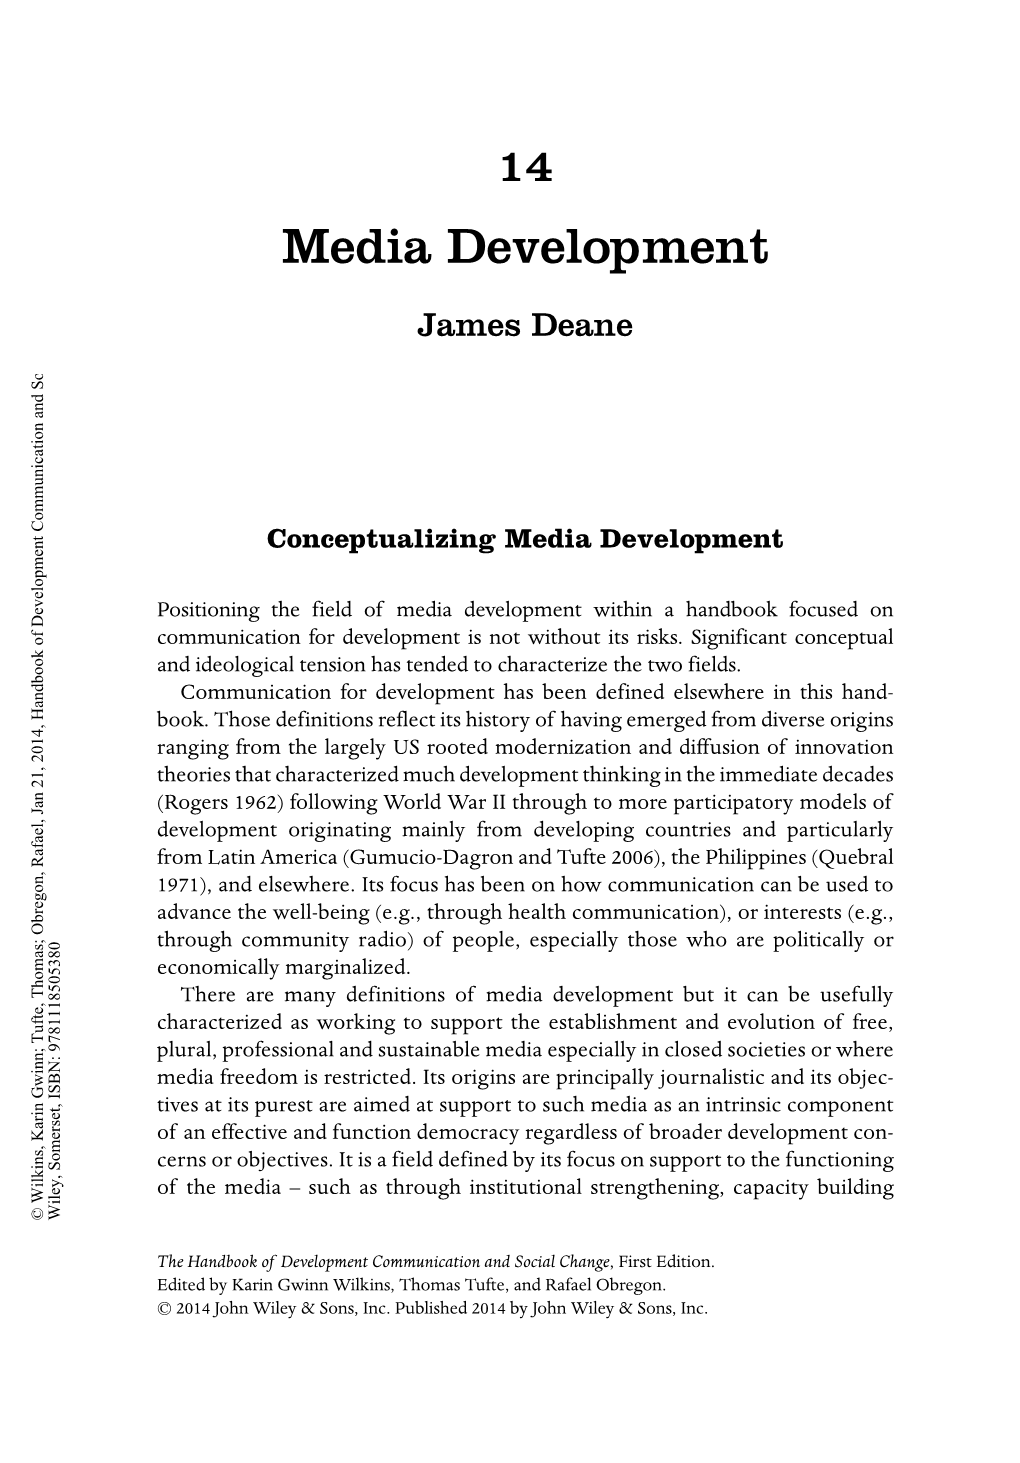 James Deane Media Development